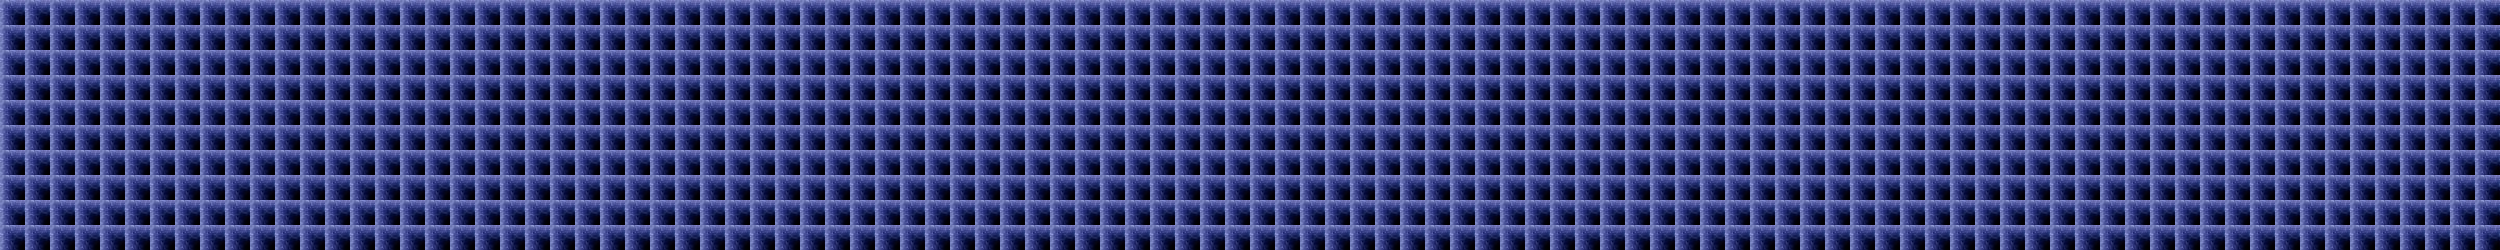 Blue grid divider